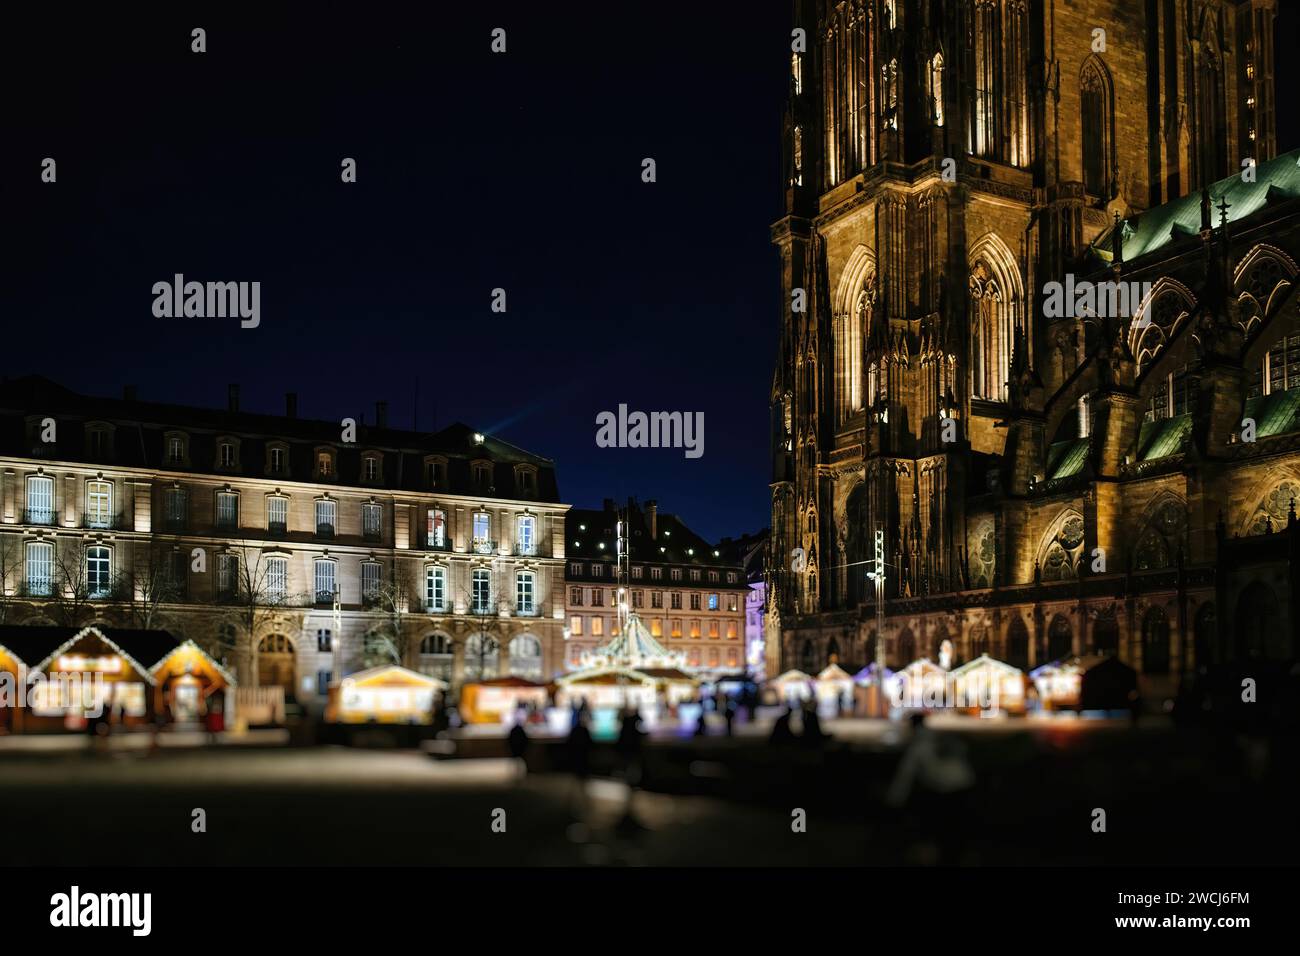 Une vue nocturne d'un marché extérieur animé à côté d'une cathédrale gothique de Strasbourg, brillamment illuminée sous le ciel étoilé Banque D'Images